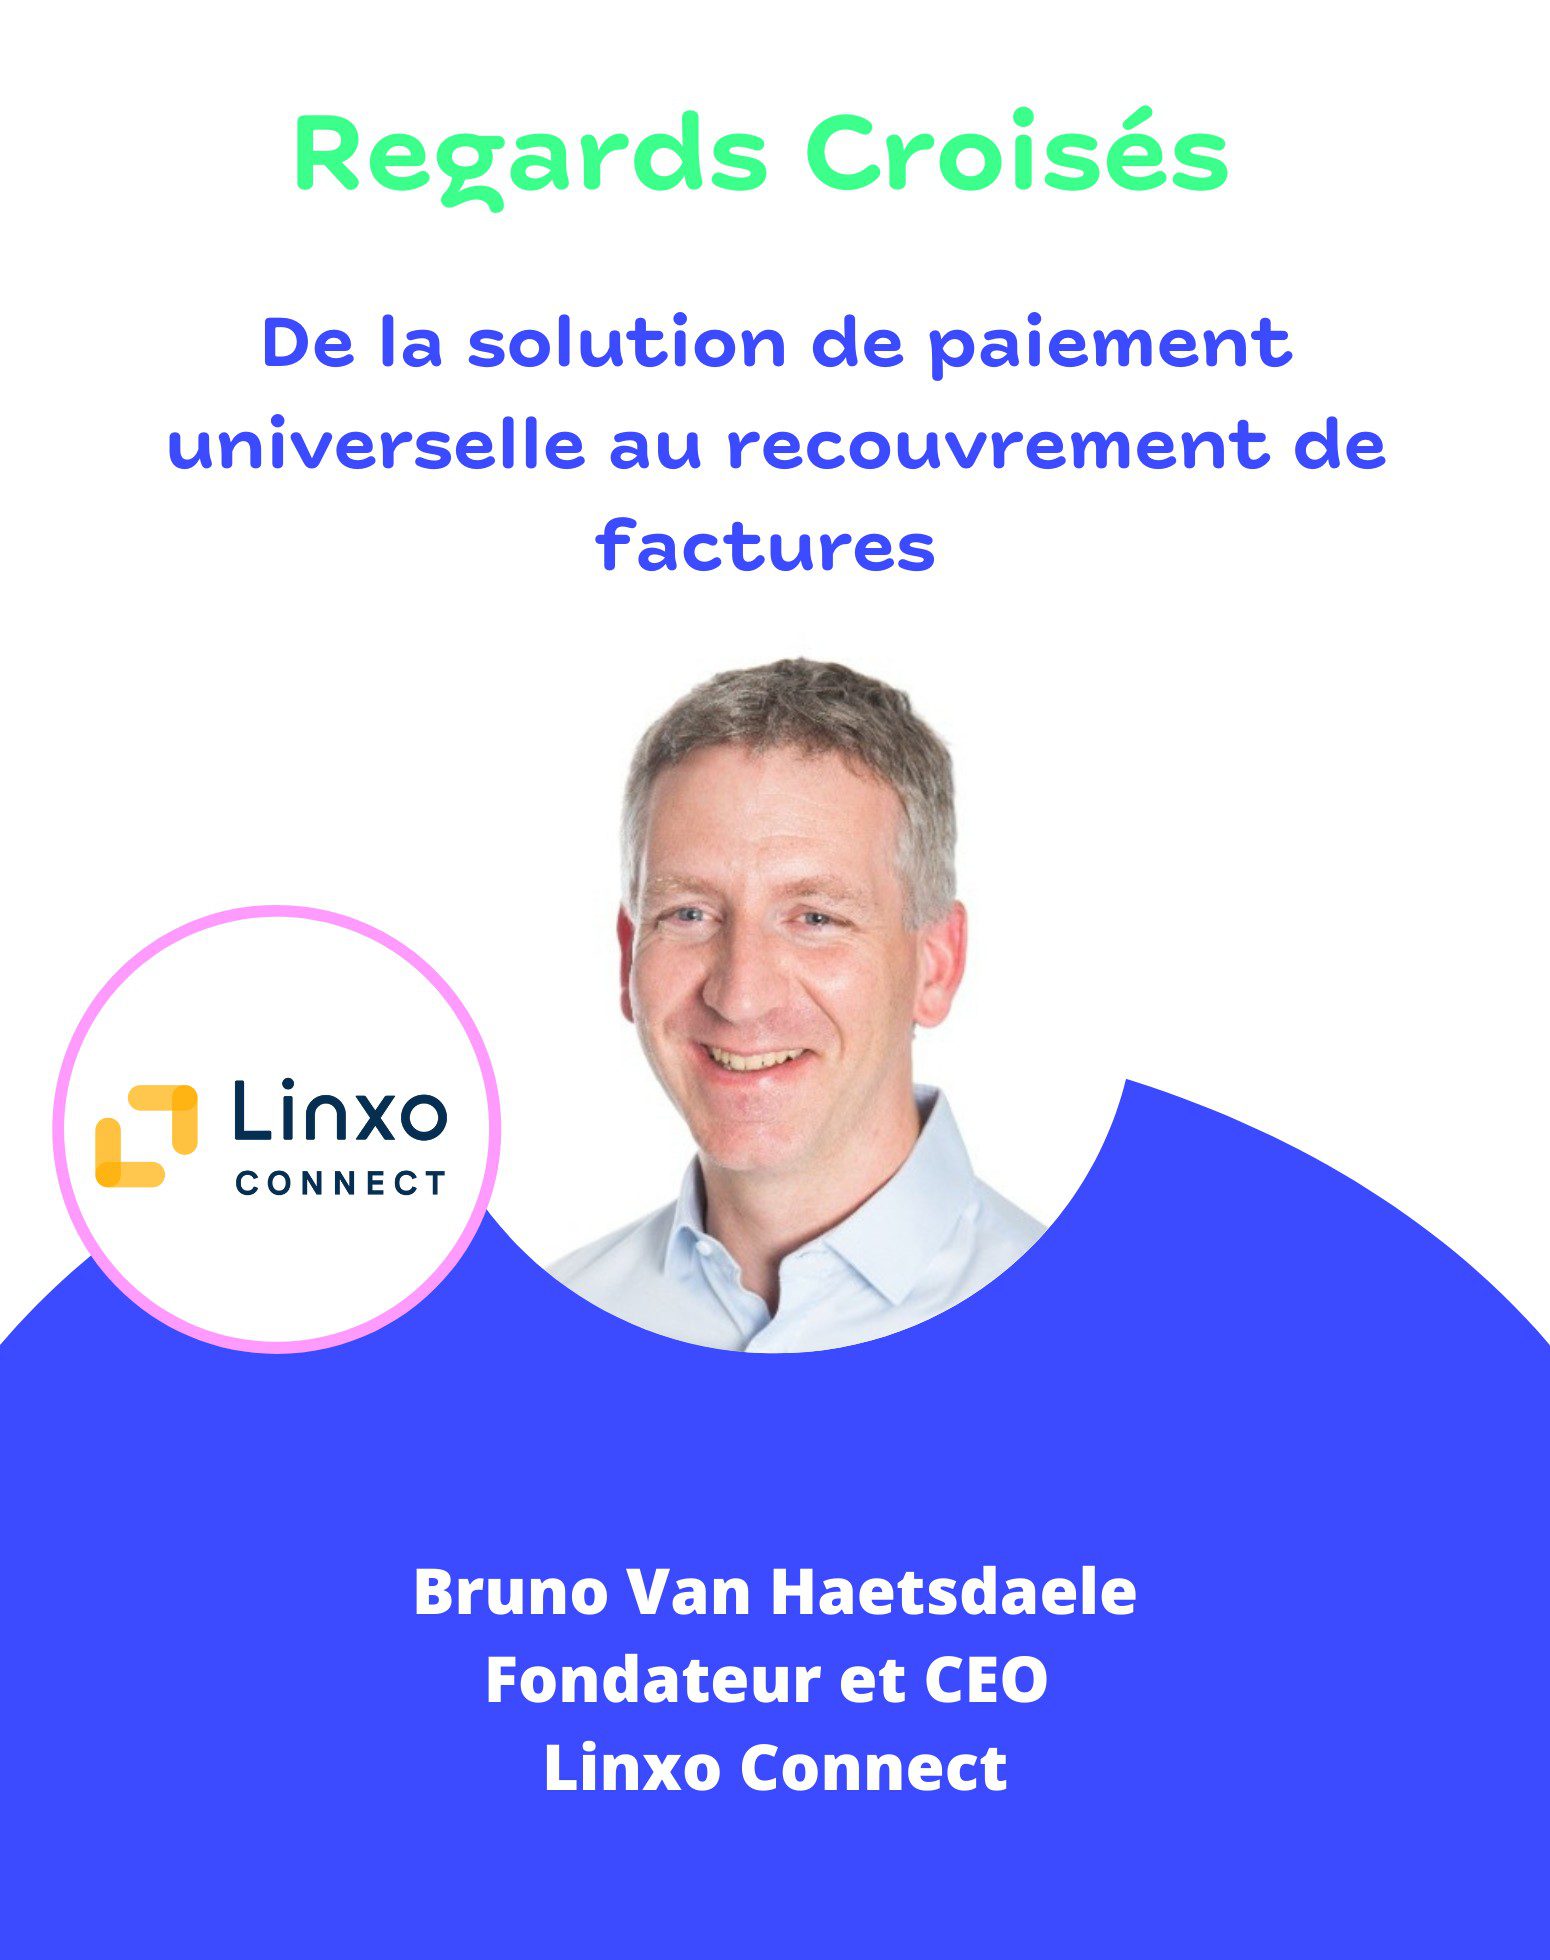 Bruno Van Haetsdaele, fondateur et CEO de Linxo Connect